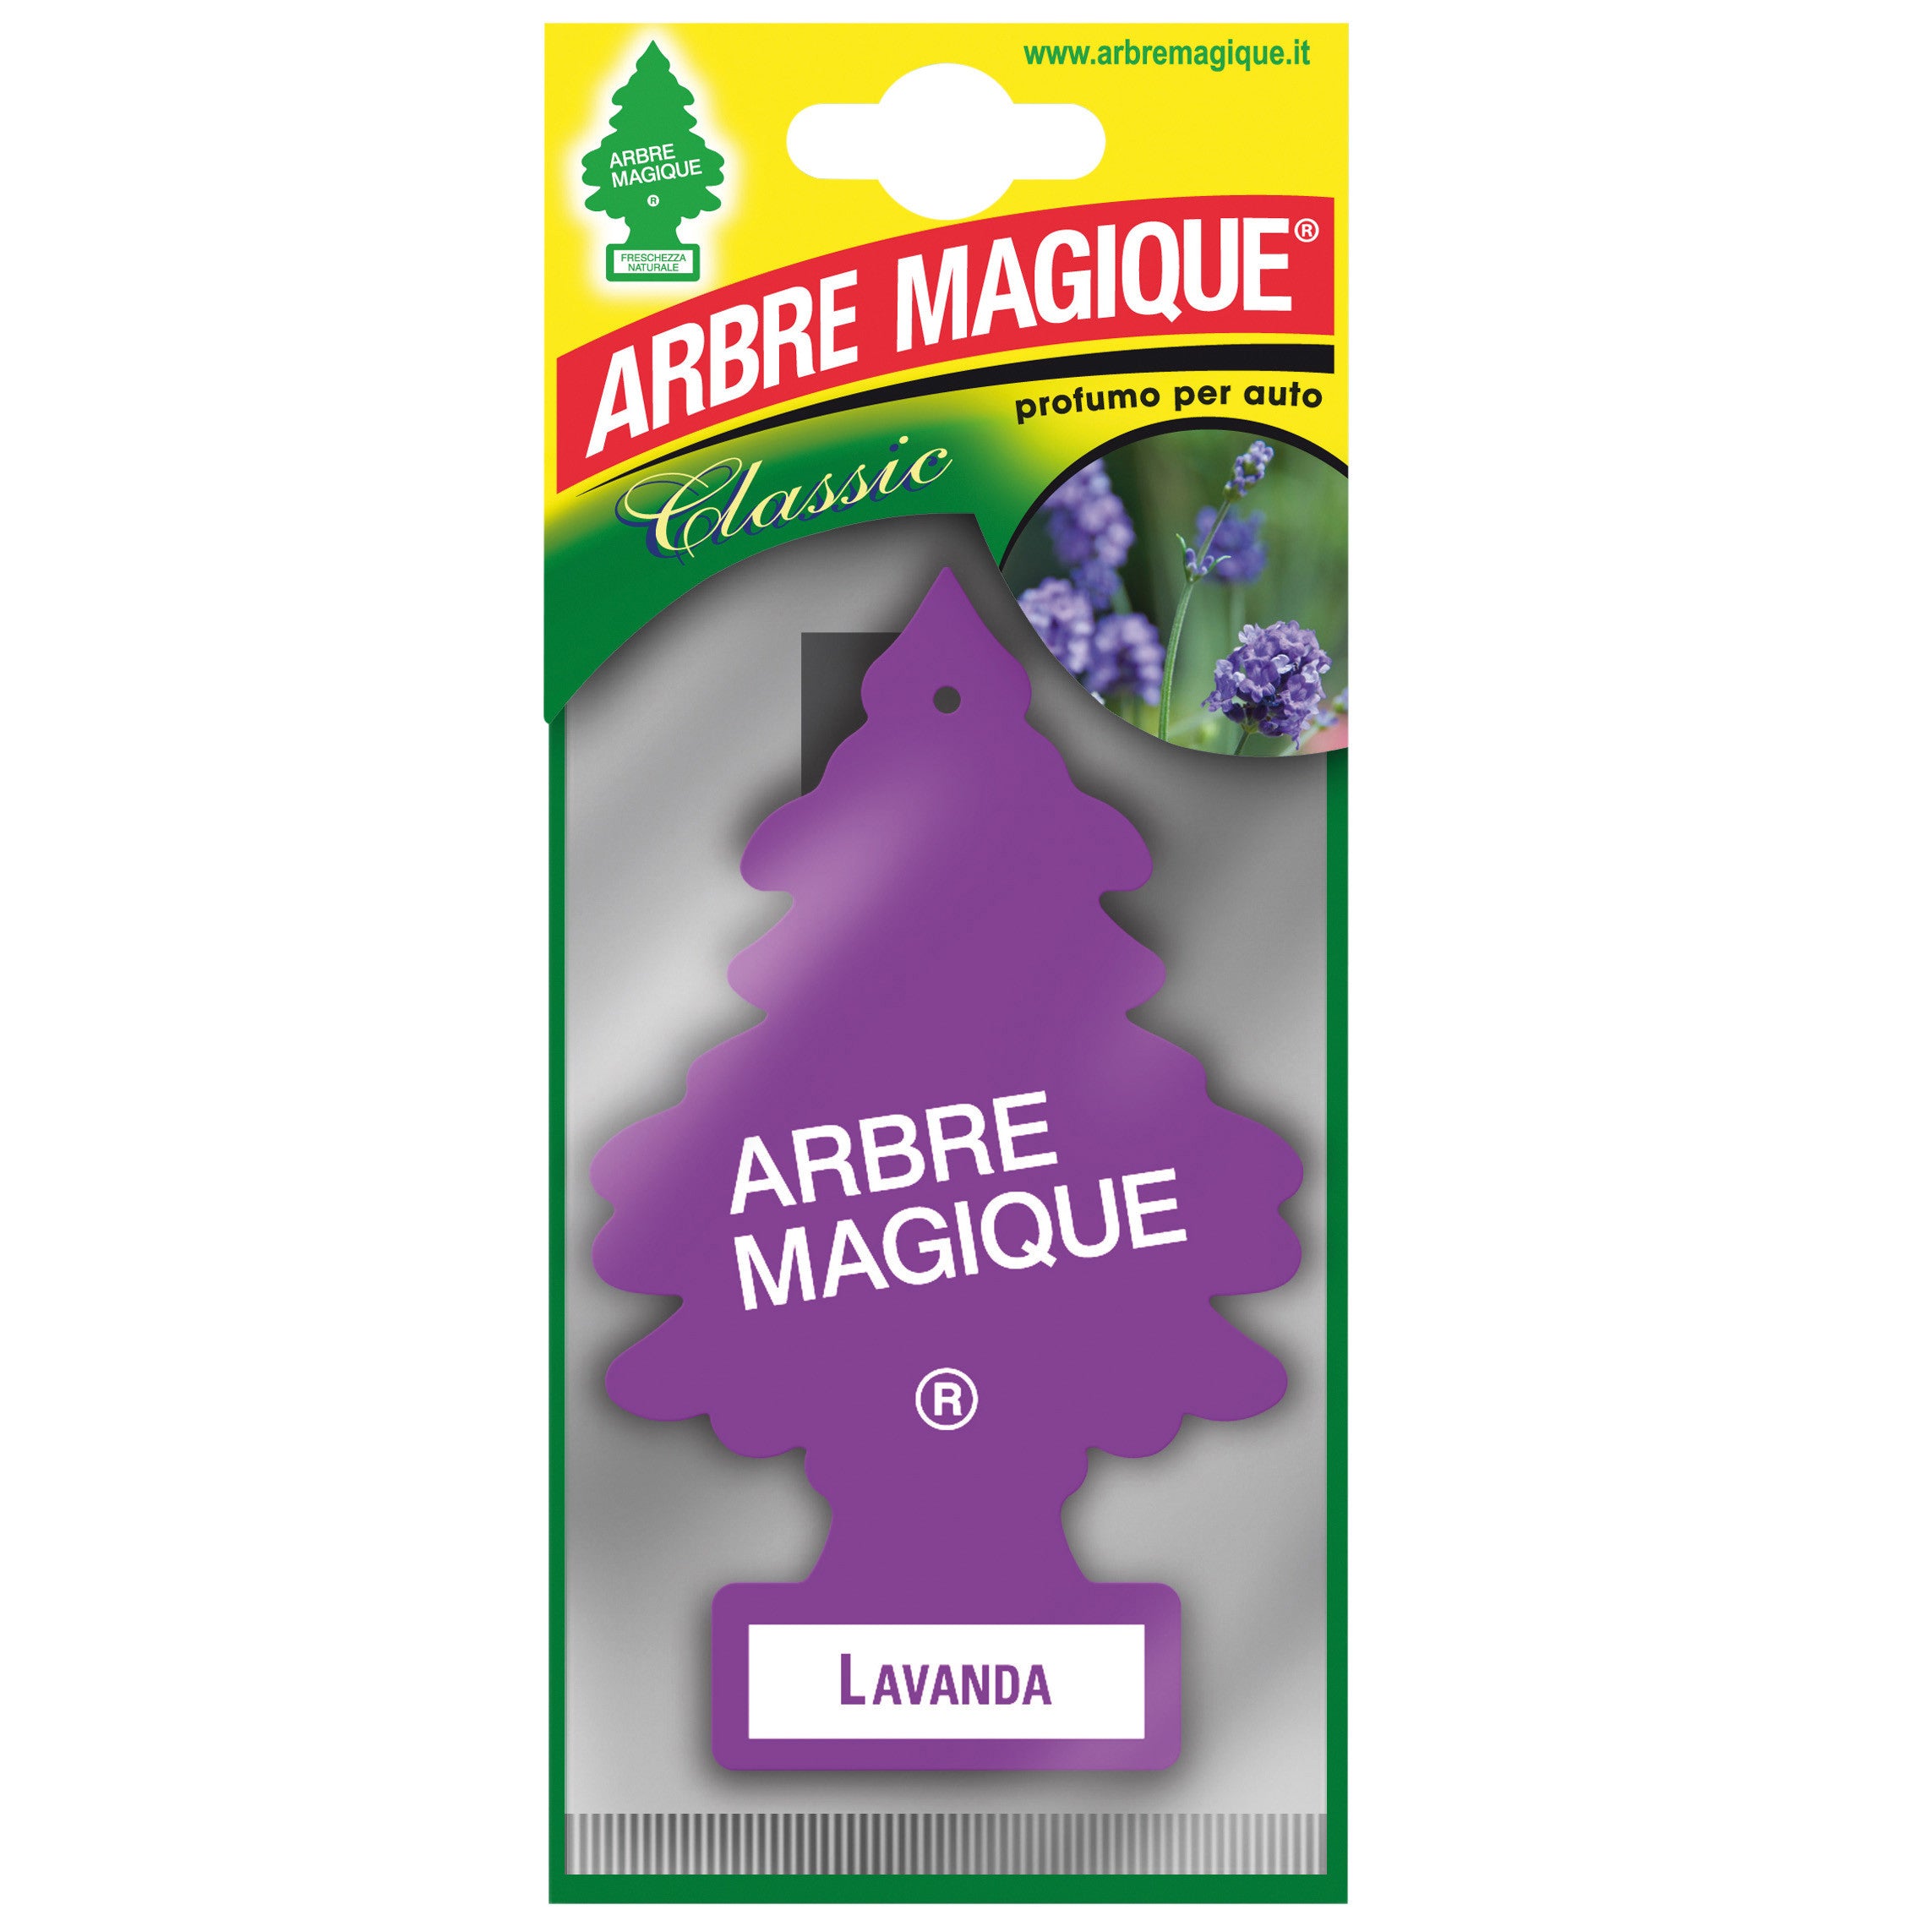 Arbre magique classic lavanda